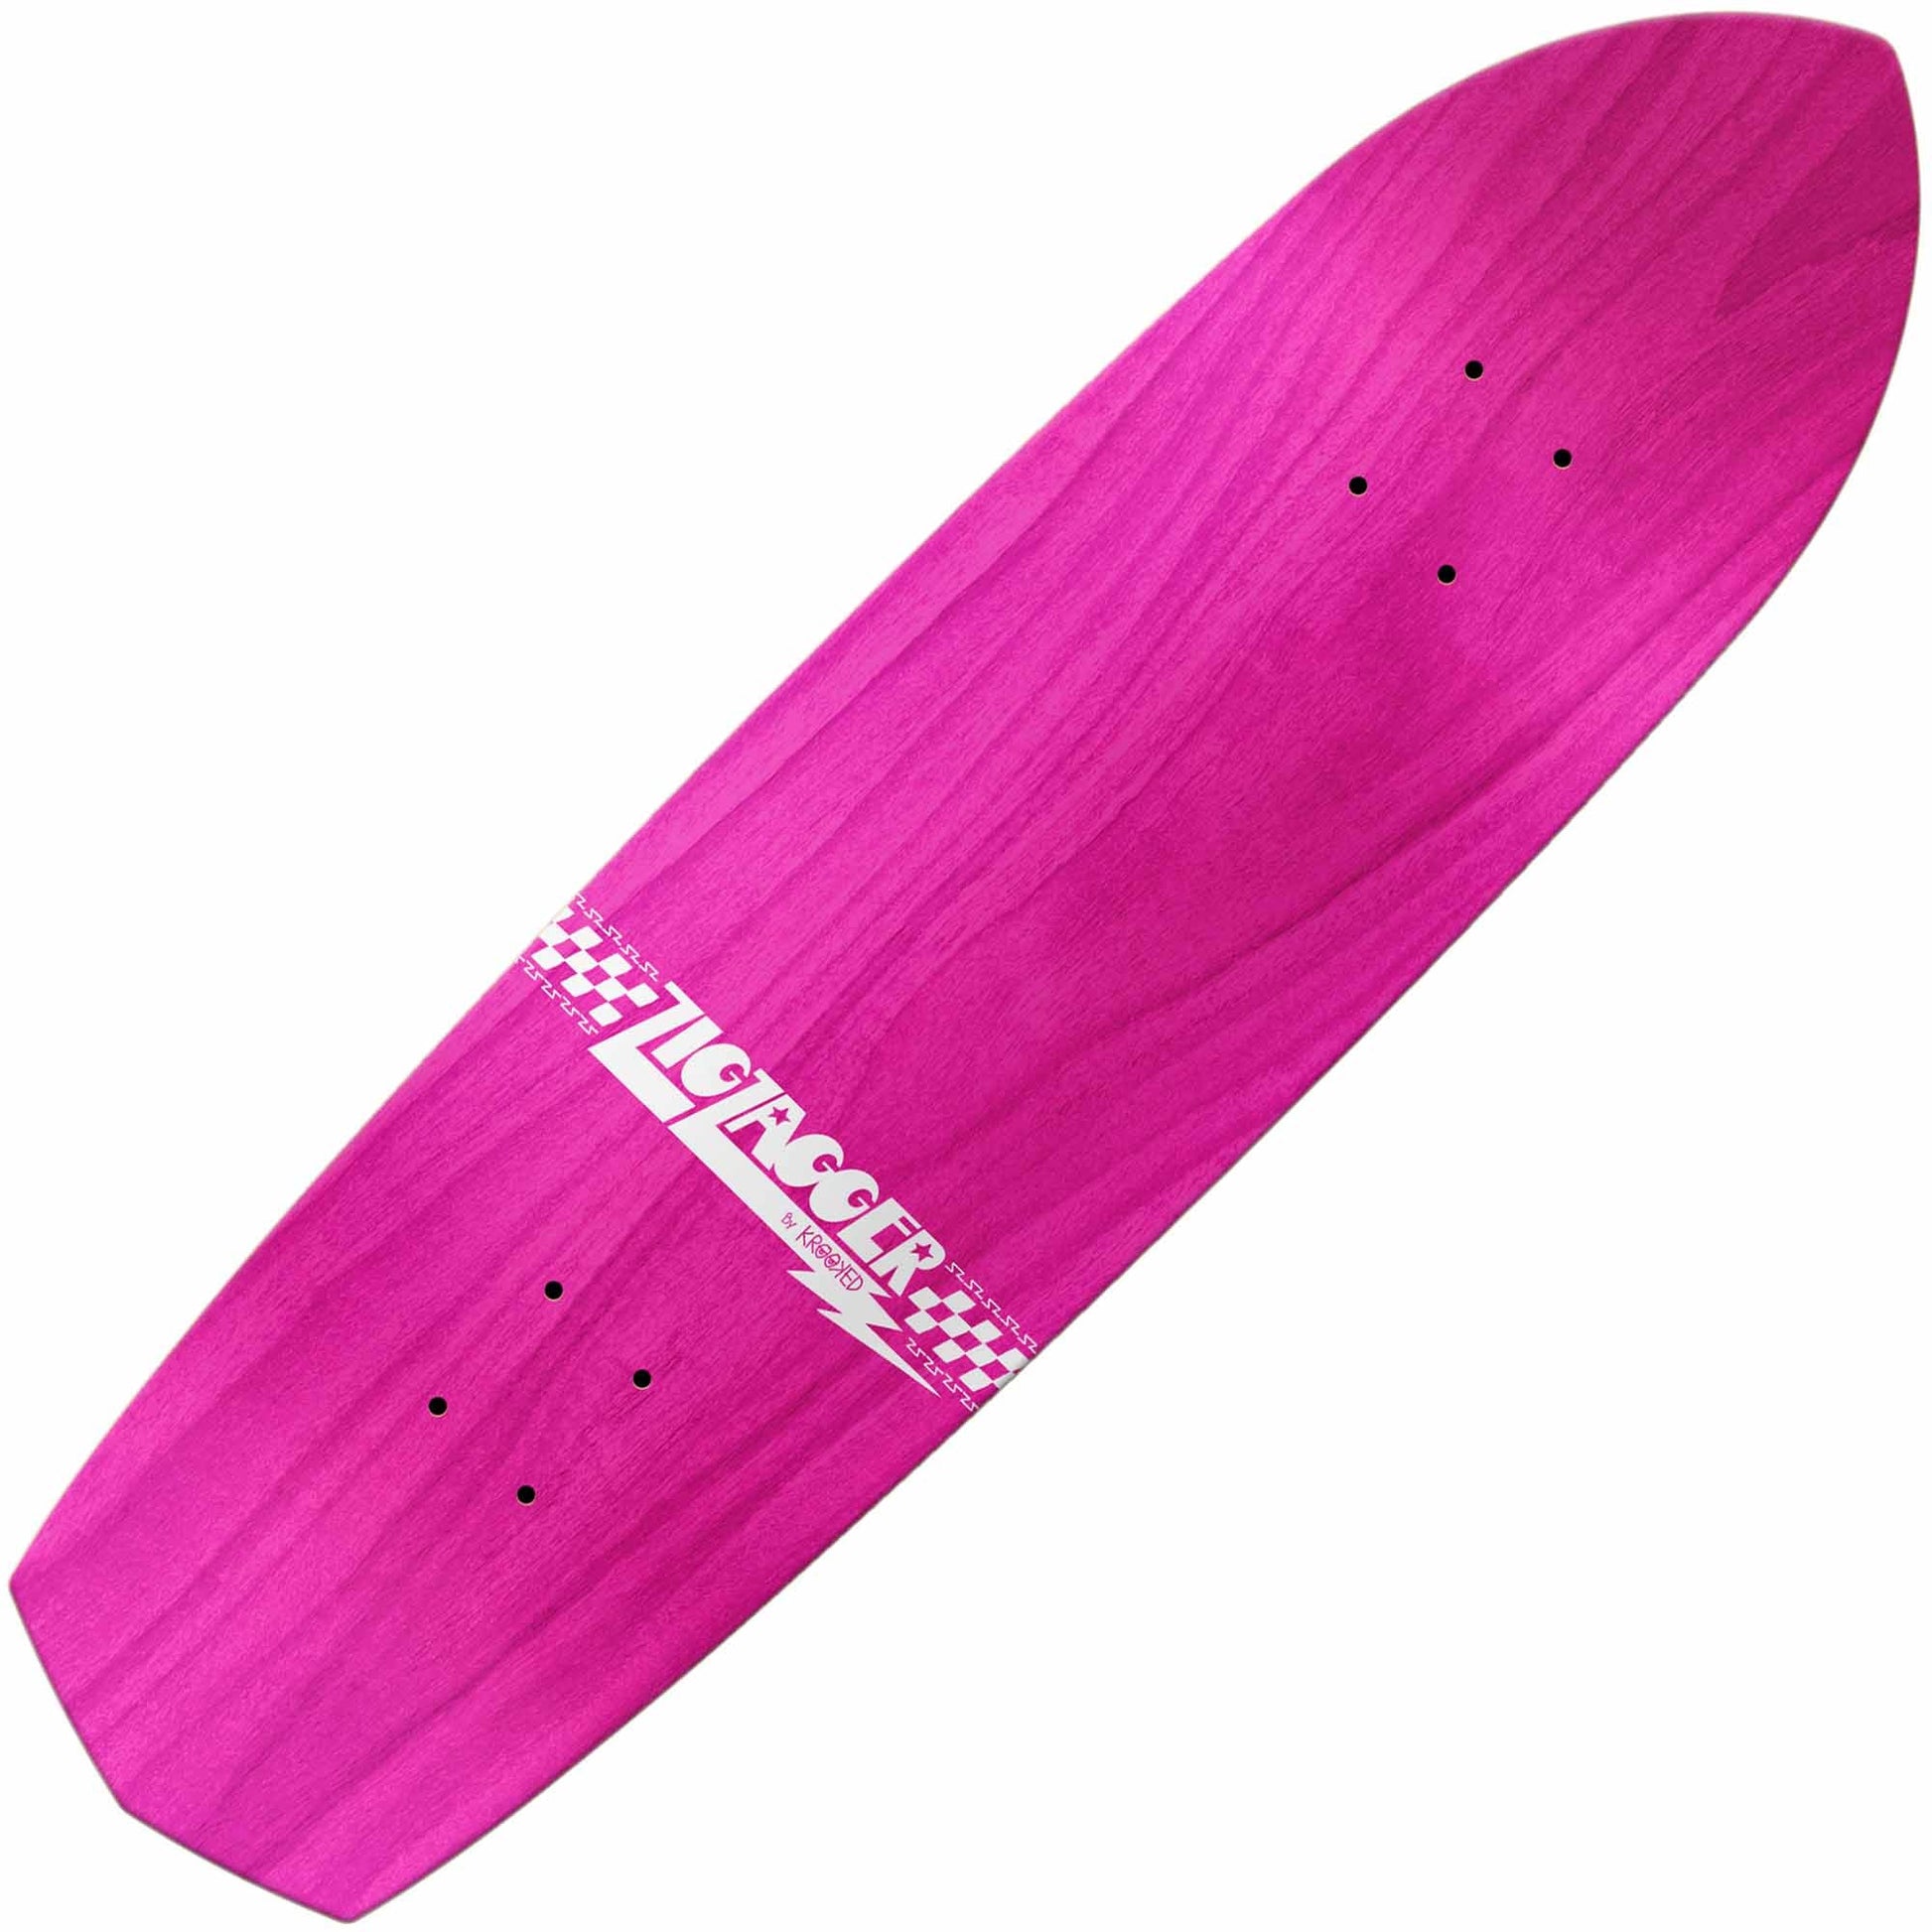 Krooked Zig Zagger OG Graphic Recolor Deck (8.625"), pink - Tiki Room Skateboards - 2